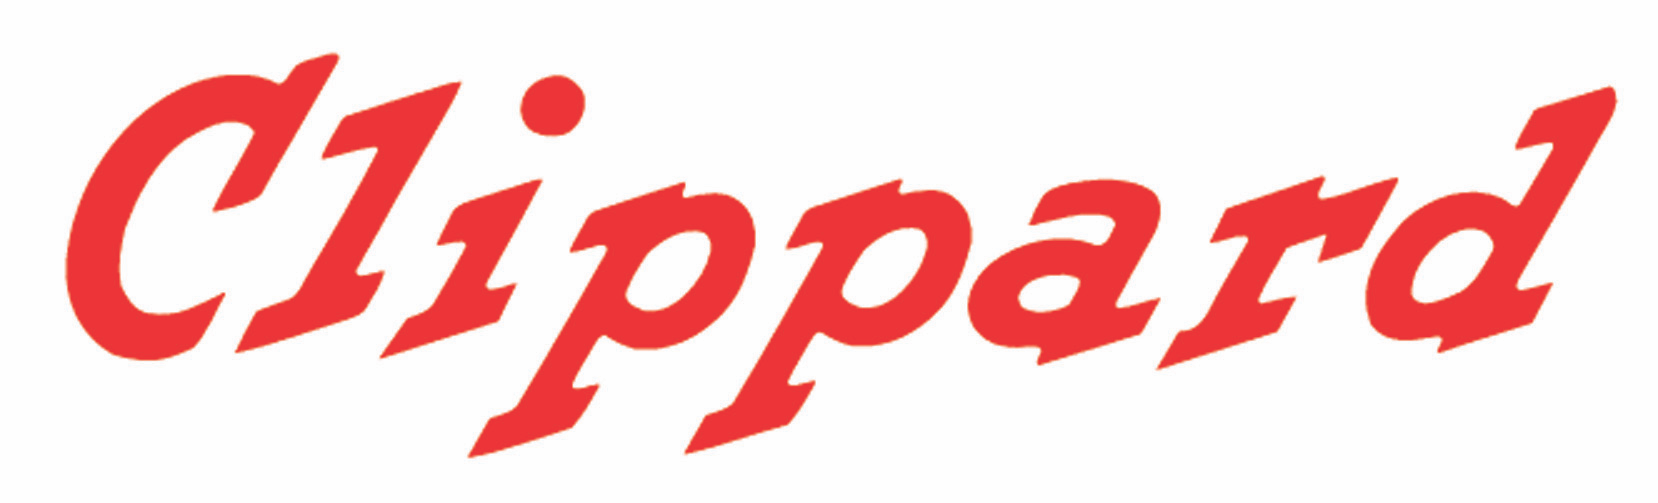 Clippard logo